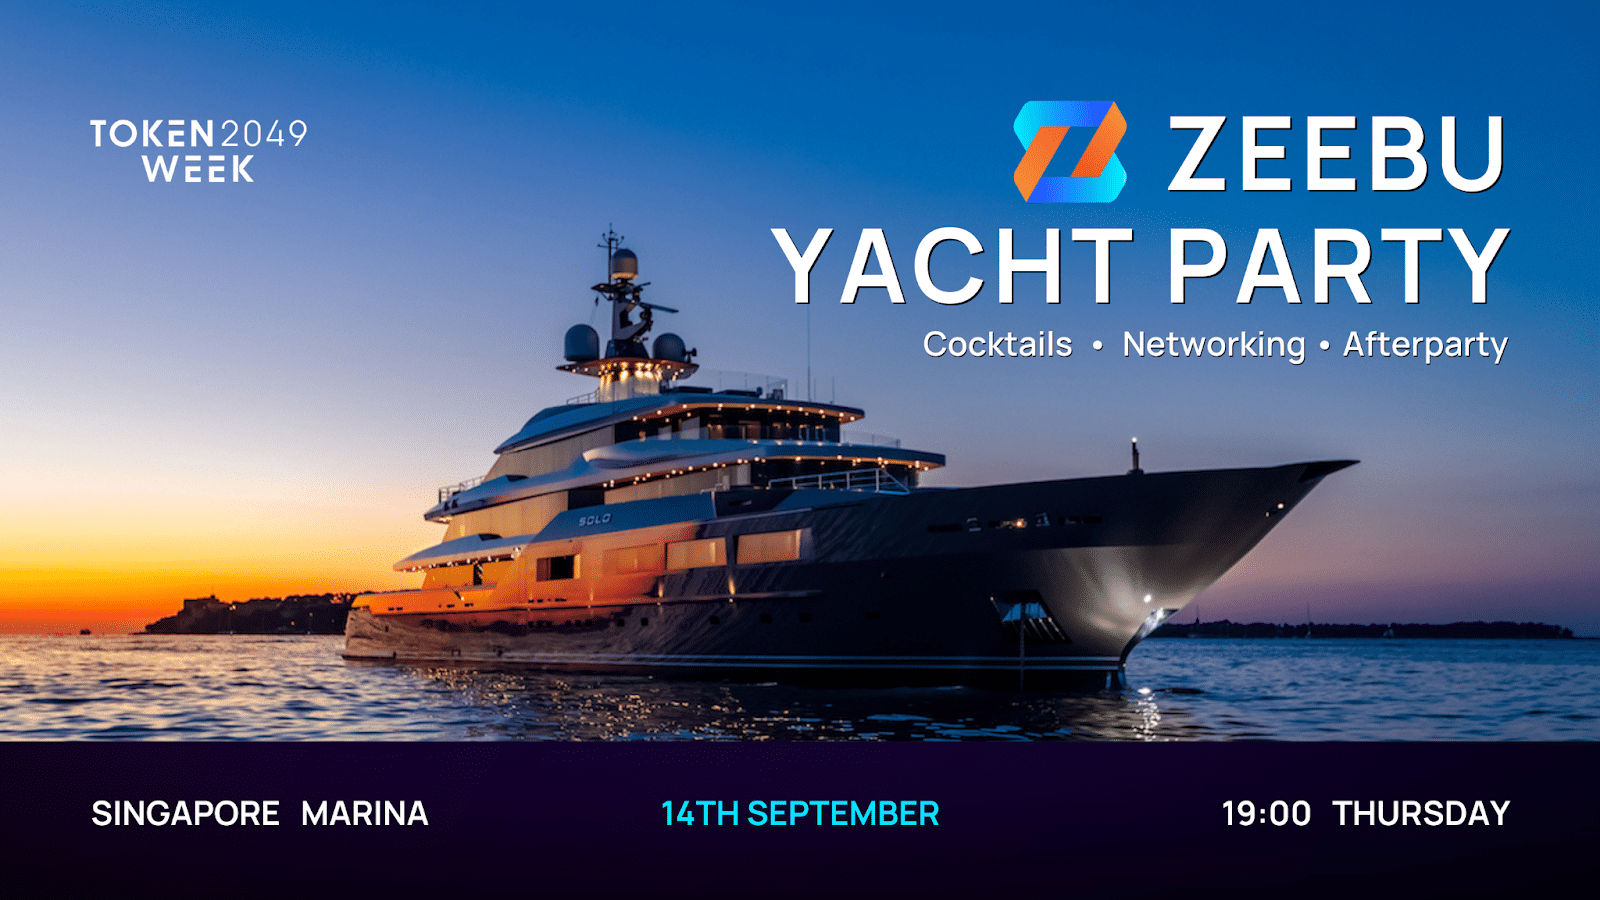 Zeebu organisera une soirée yacht exclusive aux côtés de Token2049 à Singapour